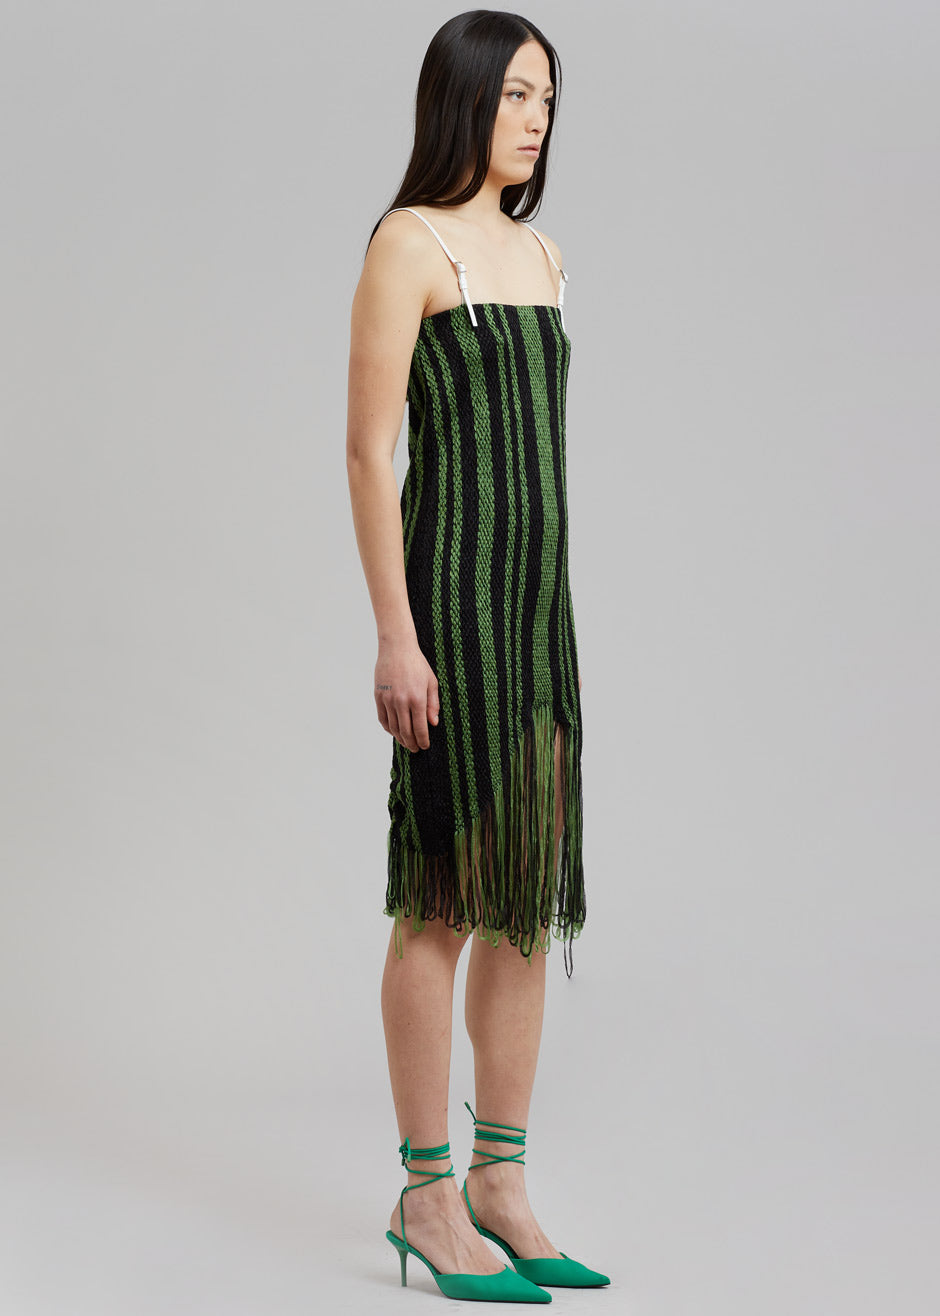 JW Anderson Fringe Detail Camisole Dress - Green/Black